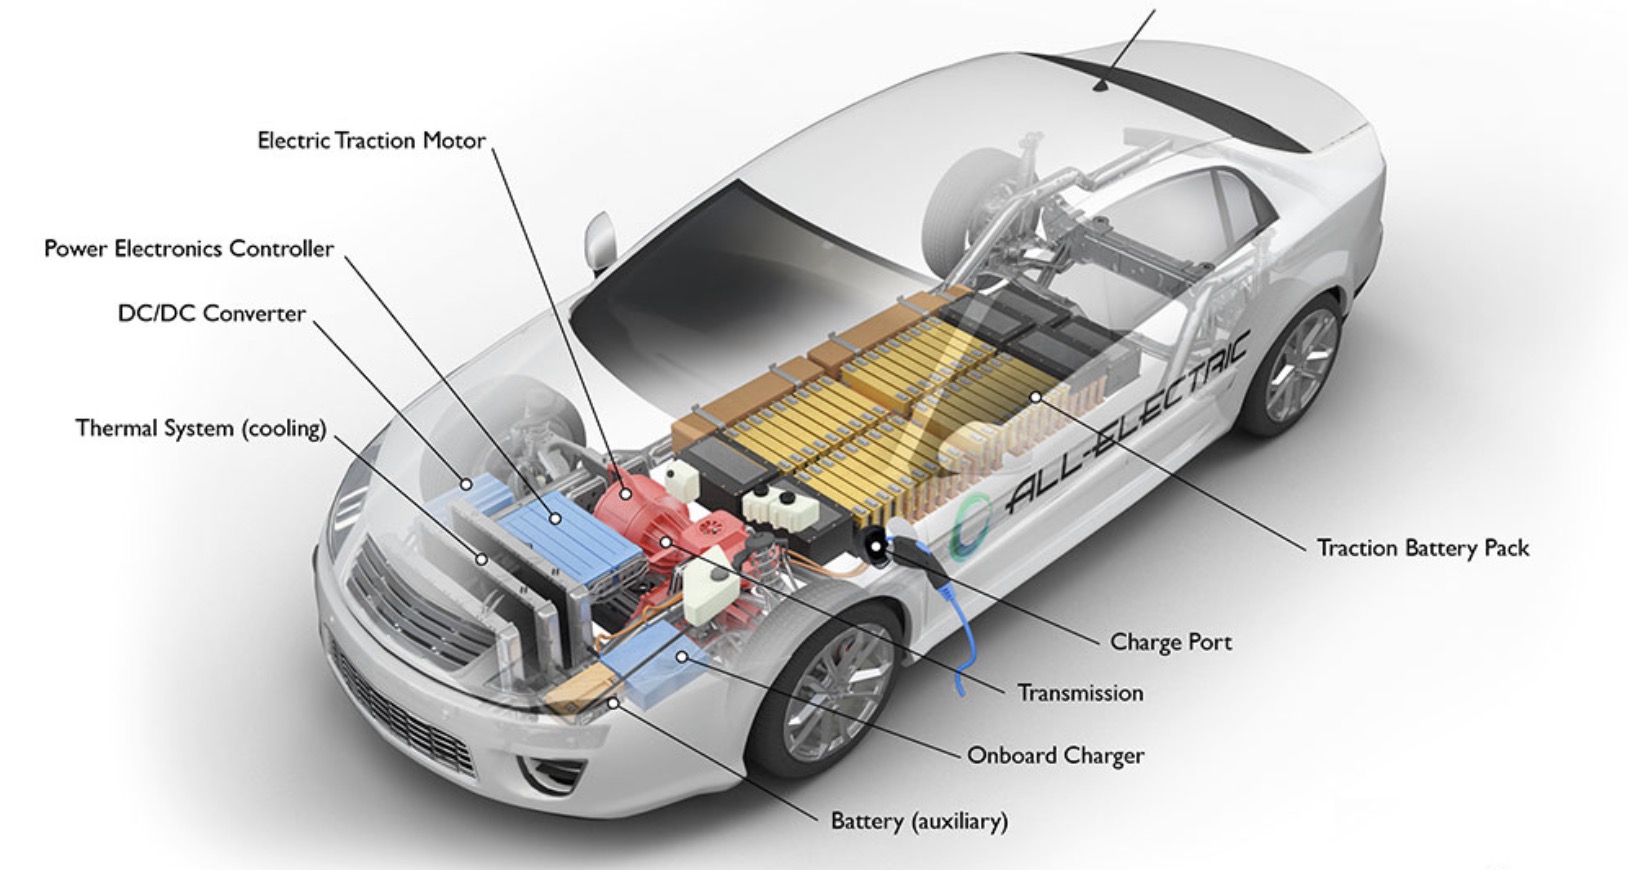 Ô tô sử dụng động cơ điện có thể giúp giảm lượng khí thải do việc đốt nhiên liệu hoá thạch tạo ra. Ảnh: Sở Năng lượng Mỹ